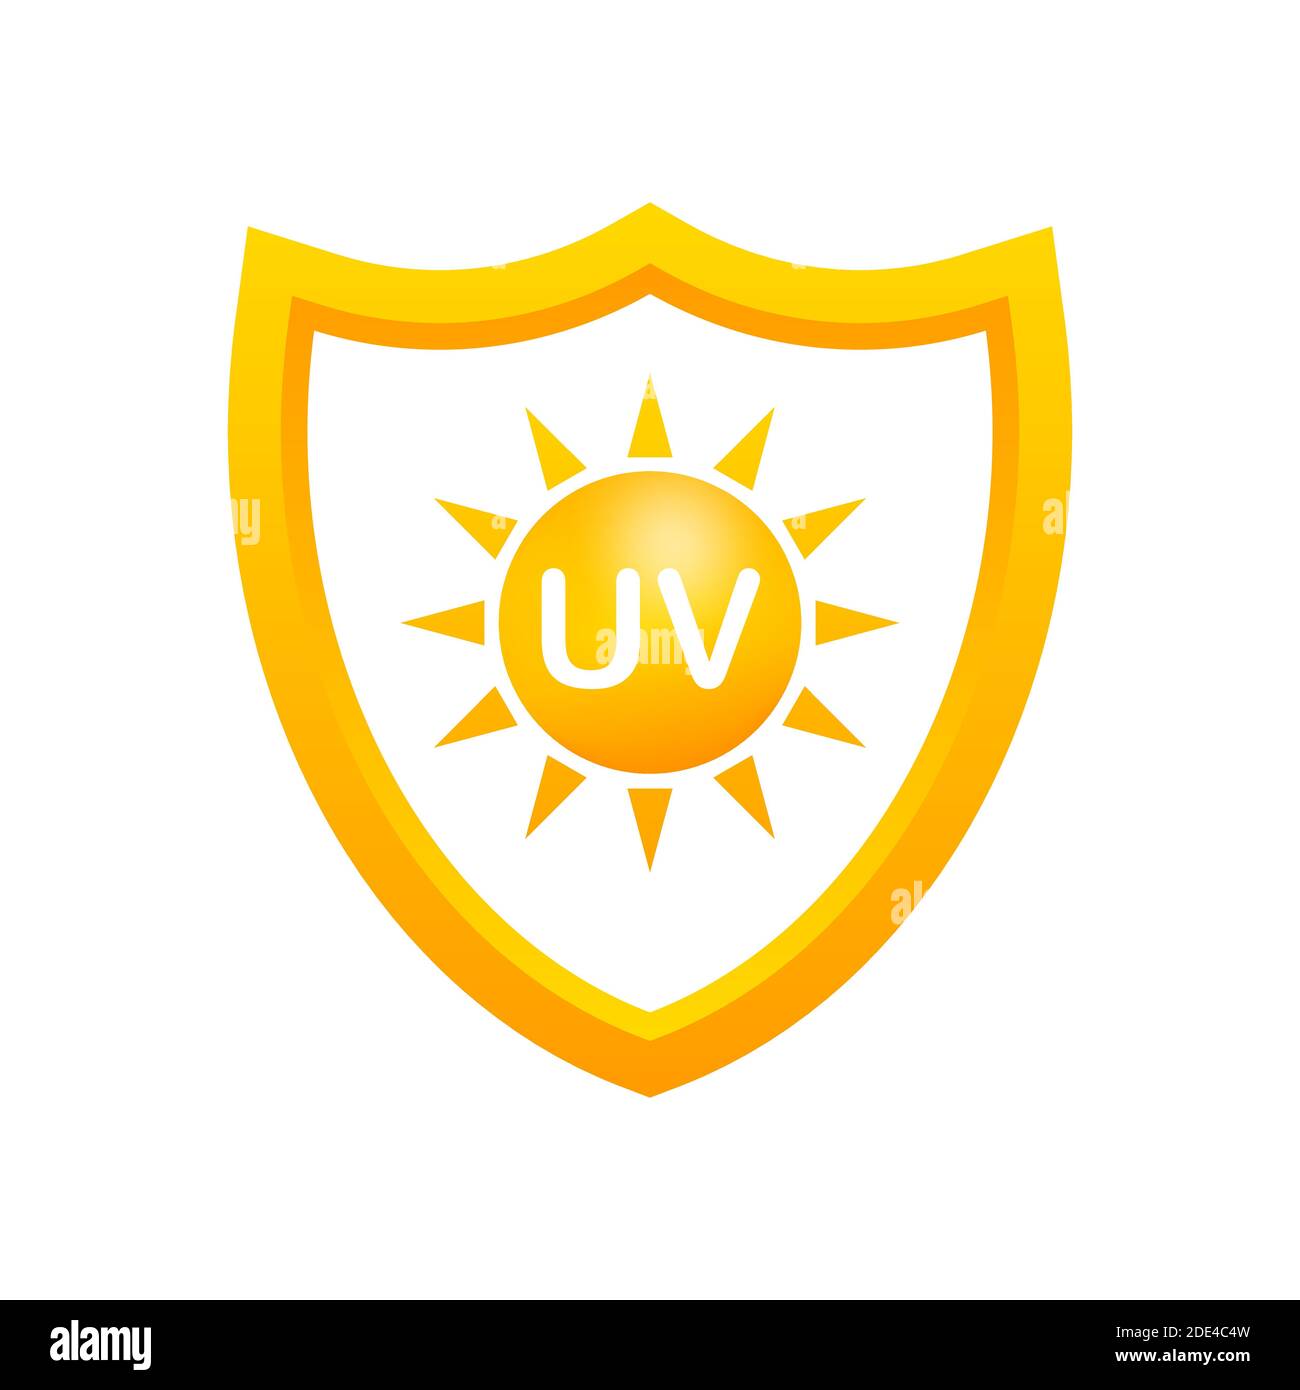 UV-Schutz Aufkleber oder Sticker auf weißem Hintergrund, Vector  Illustration Stock-Vektorgrafik - Alamy